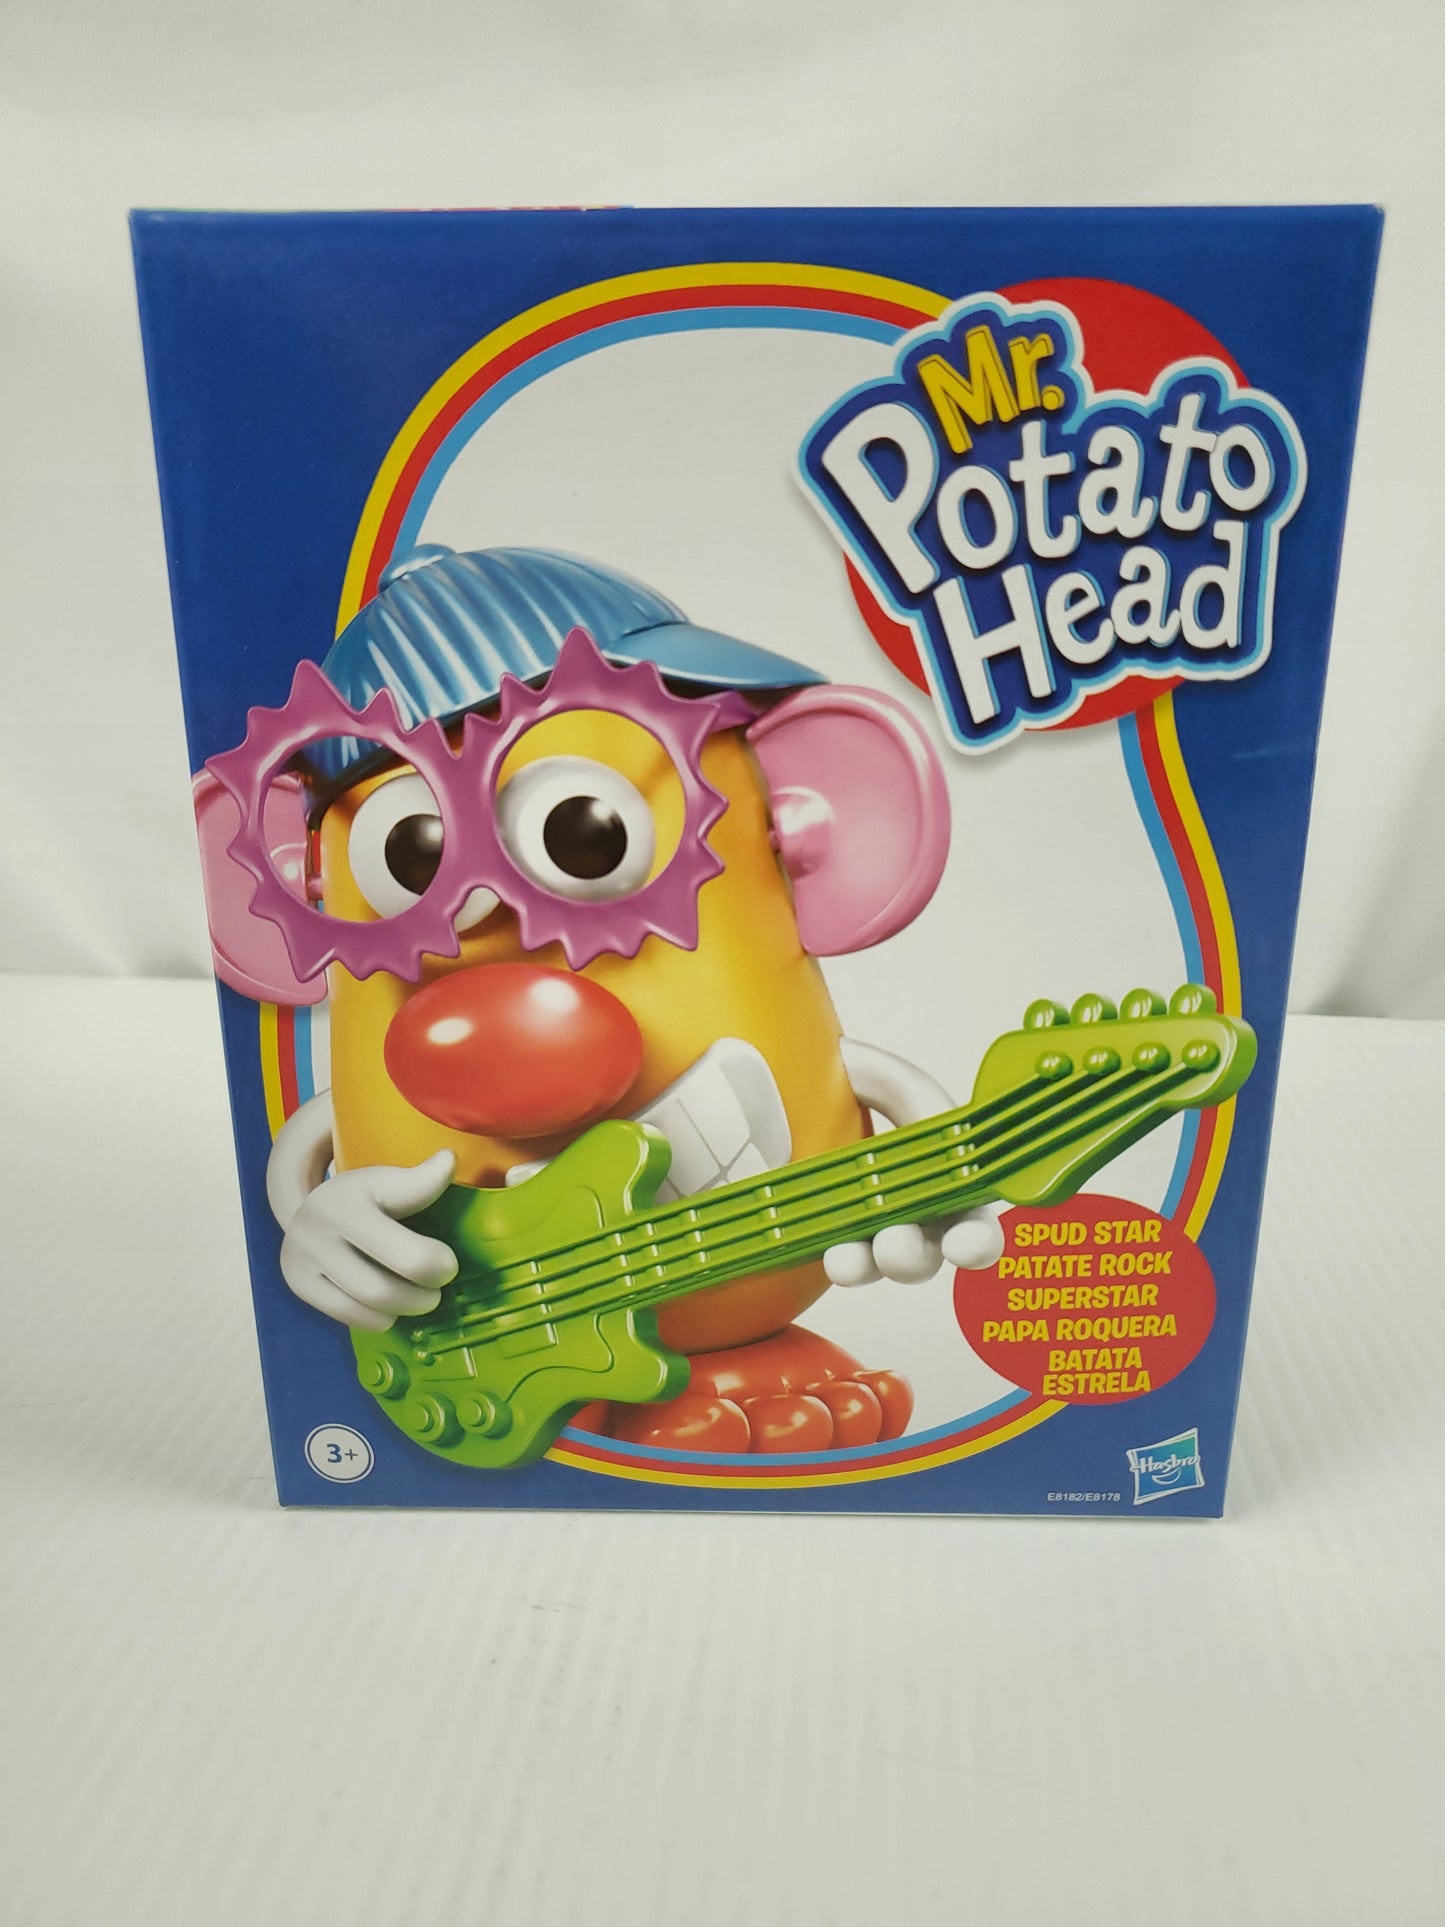 Mr. Potato Head Spud Star Hasbro